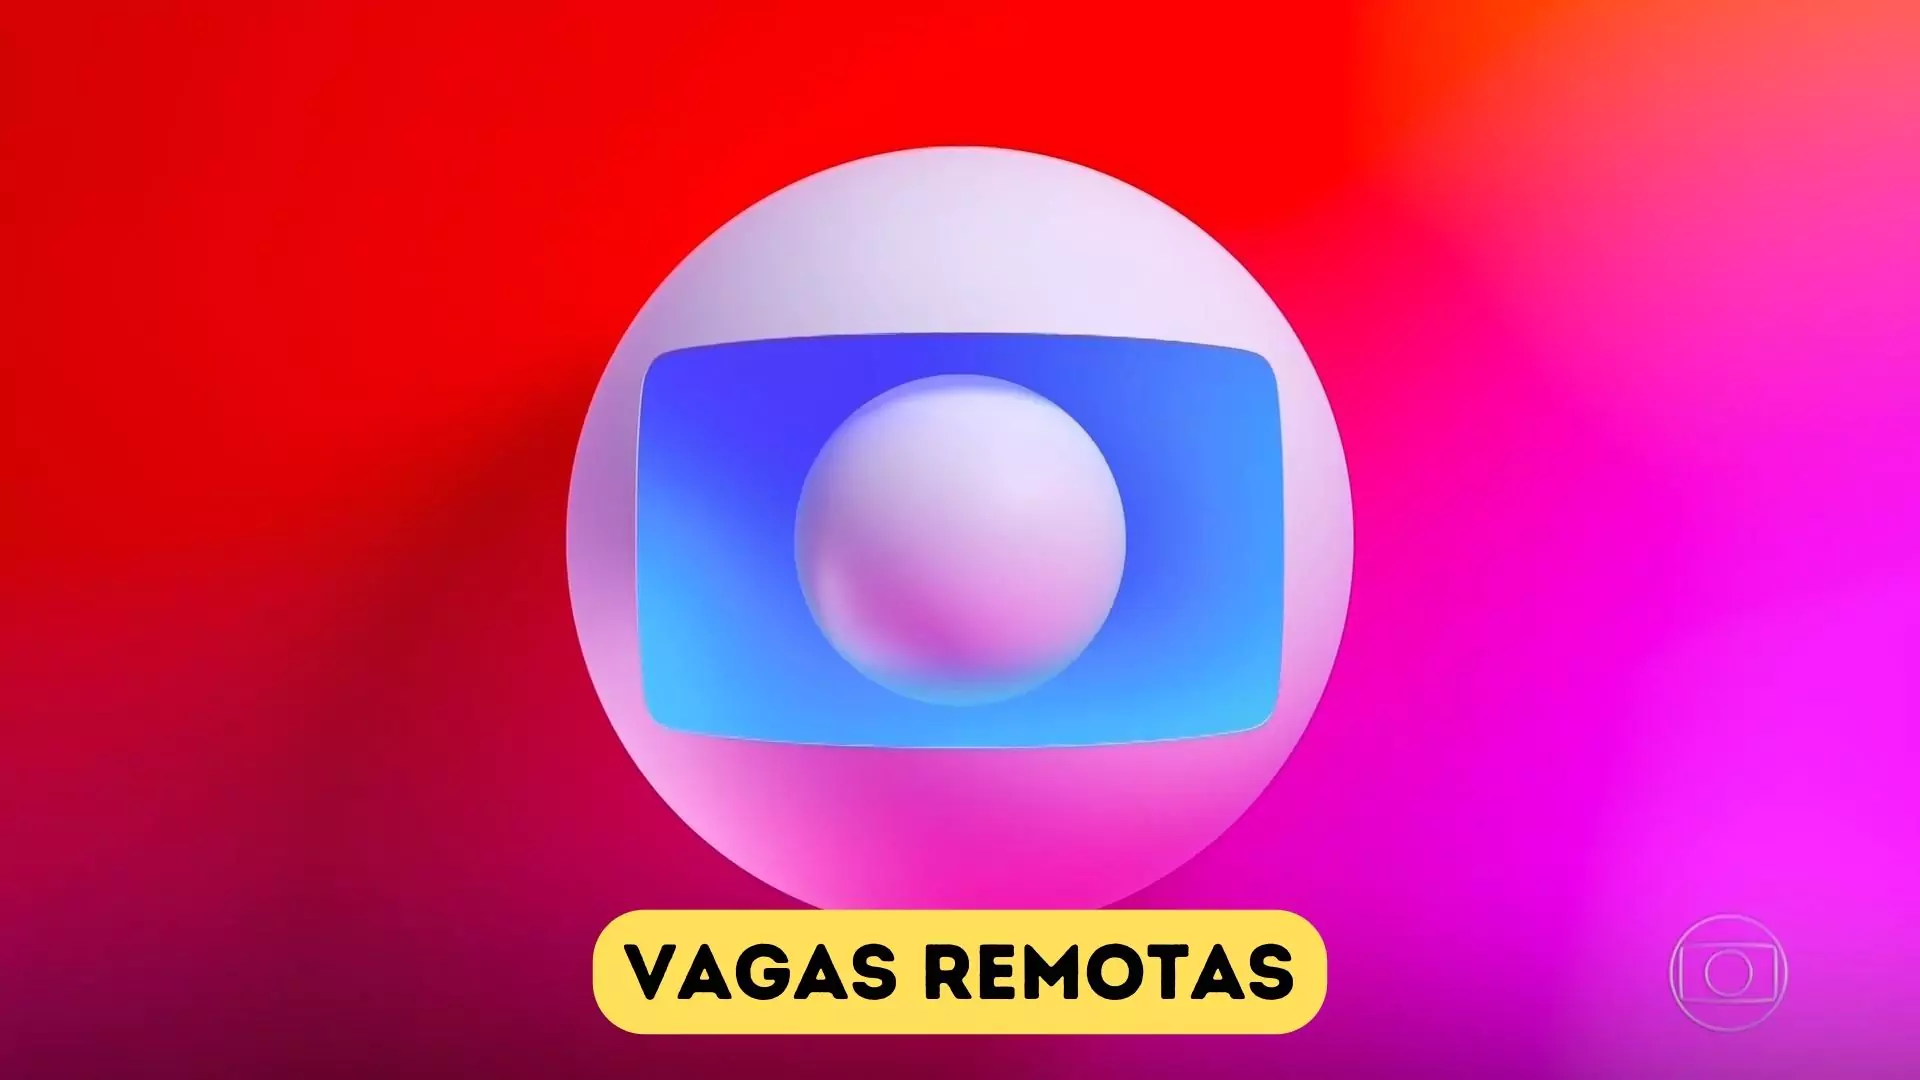 CIENTISTA DE DADOS: Vaga Remota na Rede Globo!